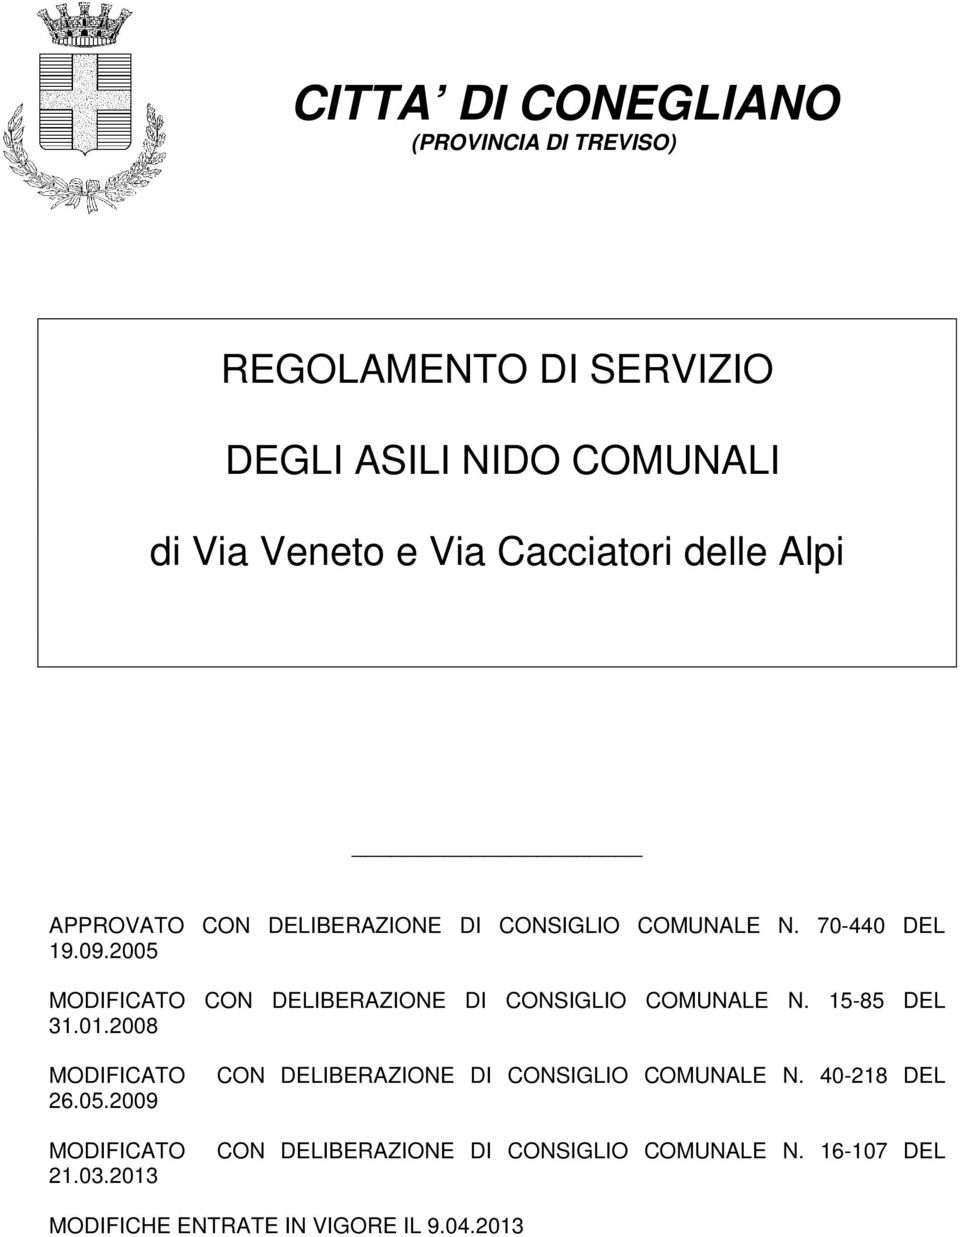 2005 MODIFICATO CON DELIBERAZIONE DI CONSIGLIO COMUNALE N. 15-85 DEL 31.01.2008 MODIFICATO 26.05.2009 MODIFICATO 21.03.